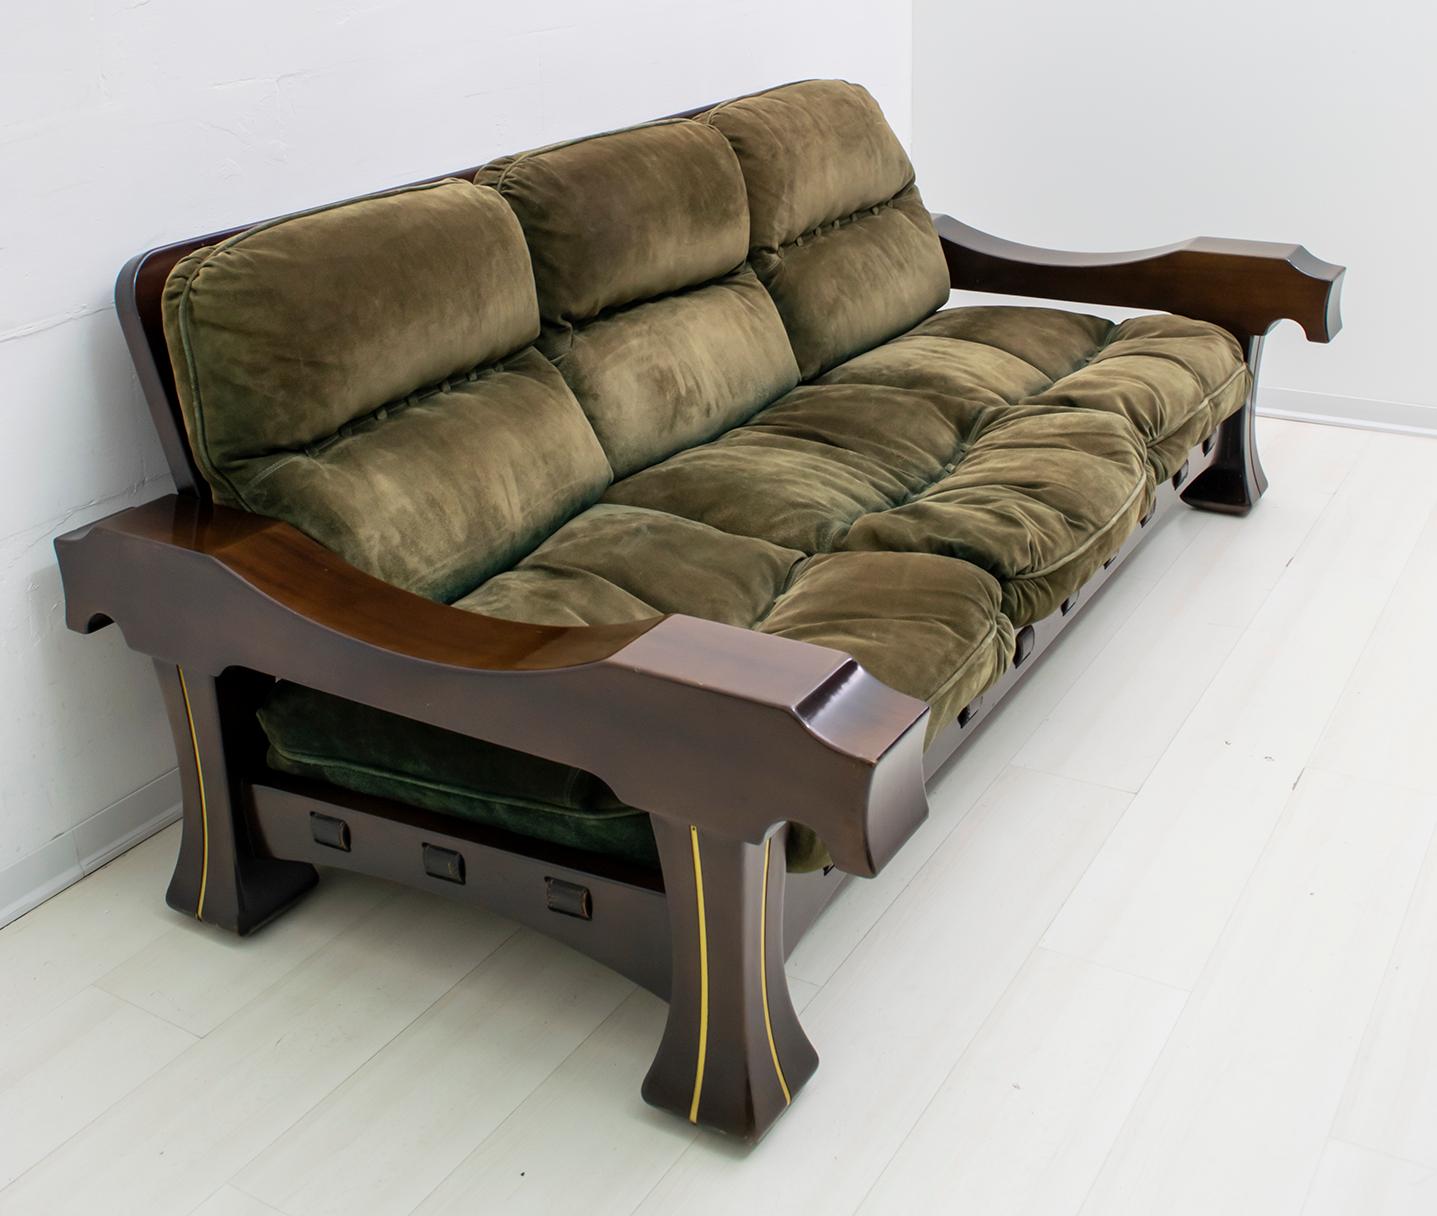 Ce canapé a été conçu par Luciano Frigerio. Il est en bois avec des frises en laiton, le revêtement est en daim et les bandes qui soutiennent les coussins sont en cuir. Ce modèle fait partie de la gamme 